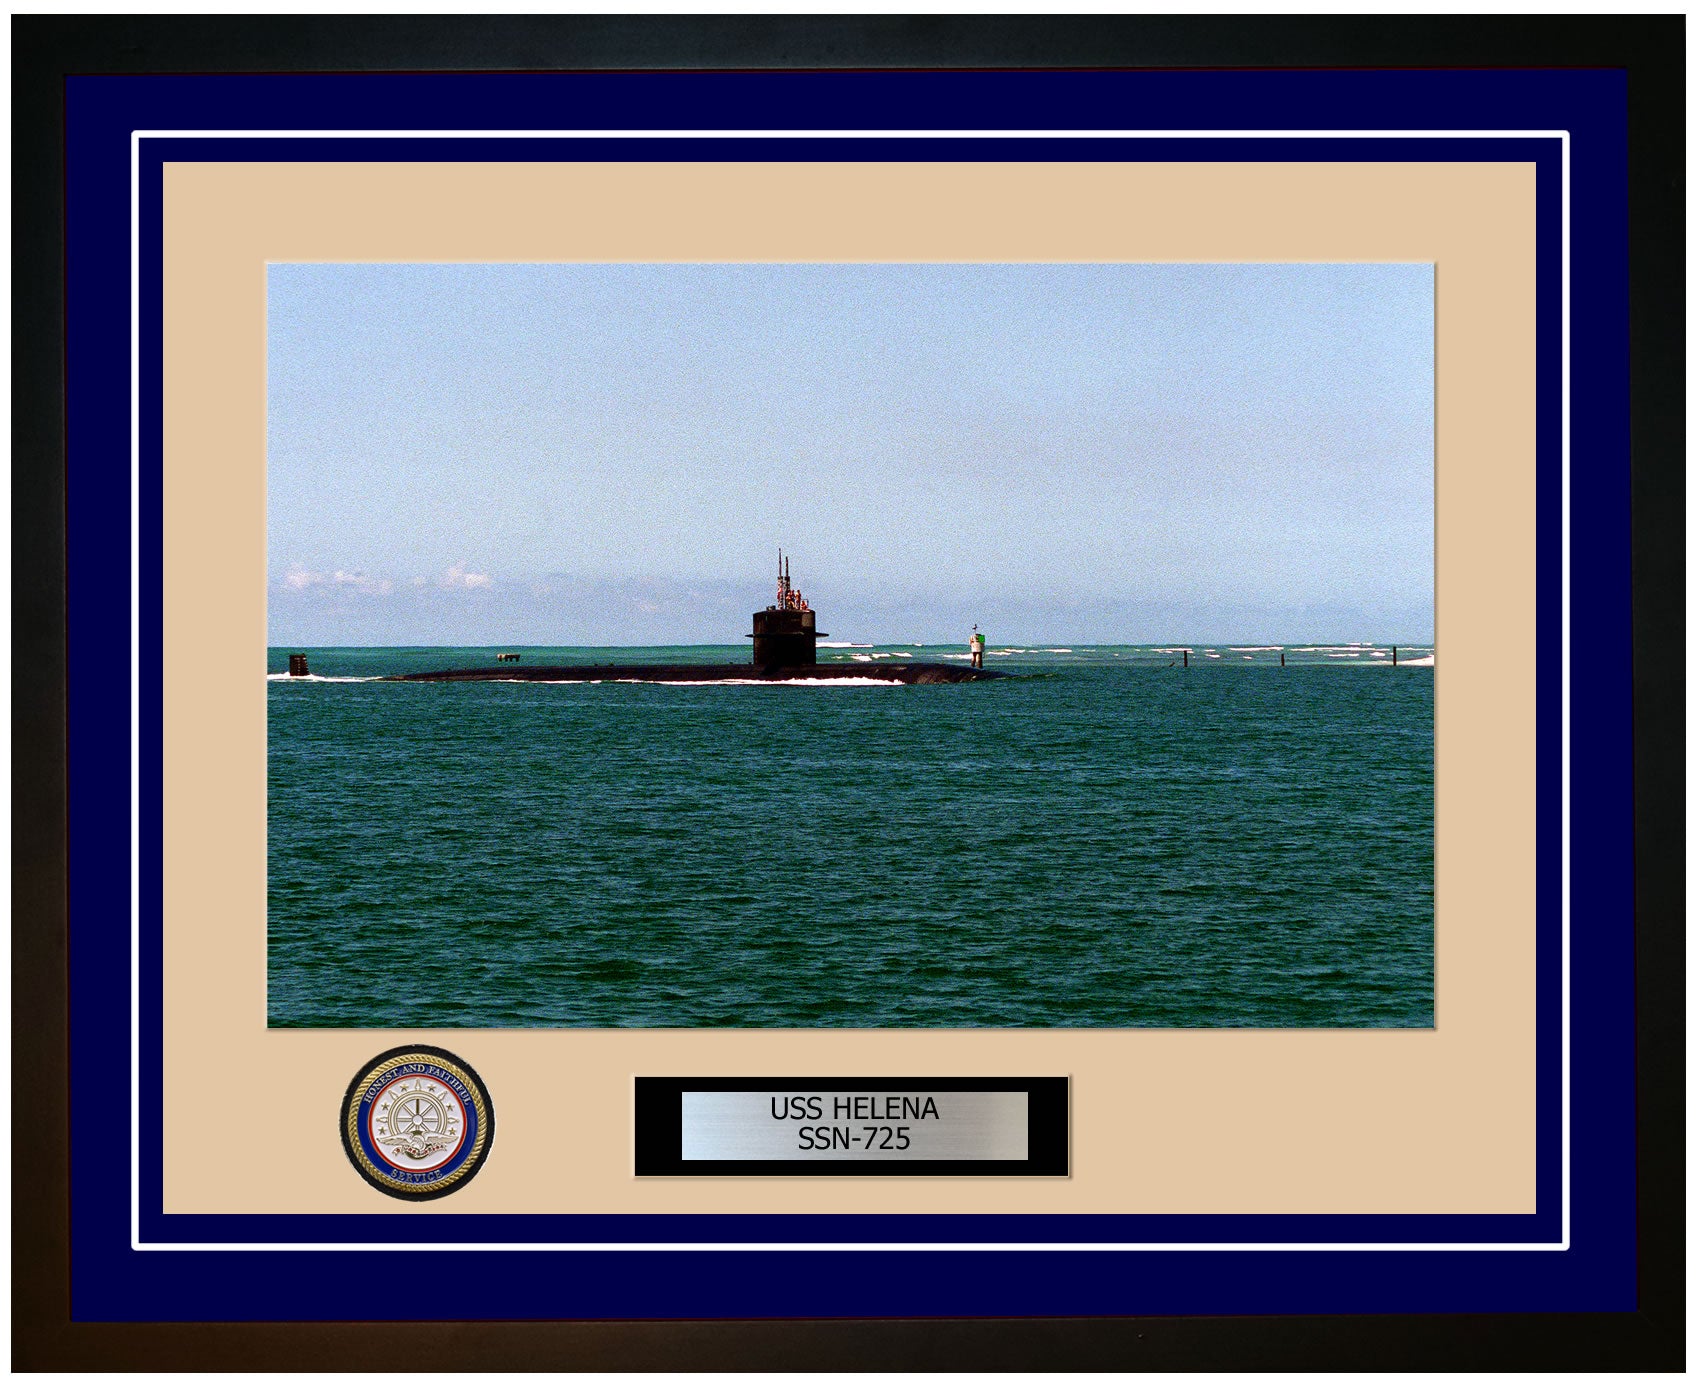 USS Helena SSN-725 Framed Navy Ship Photo Blue